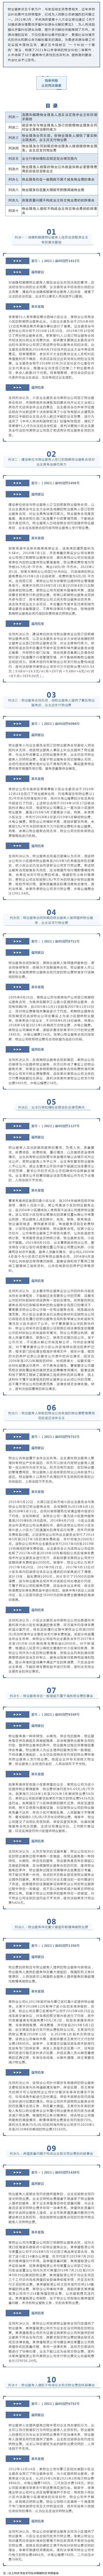 新闻发布｜重庆五中院物业纠纷示范判决摘要_壹伴长图1.jpg